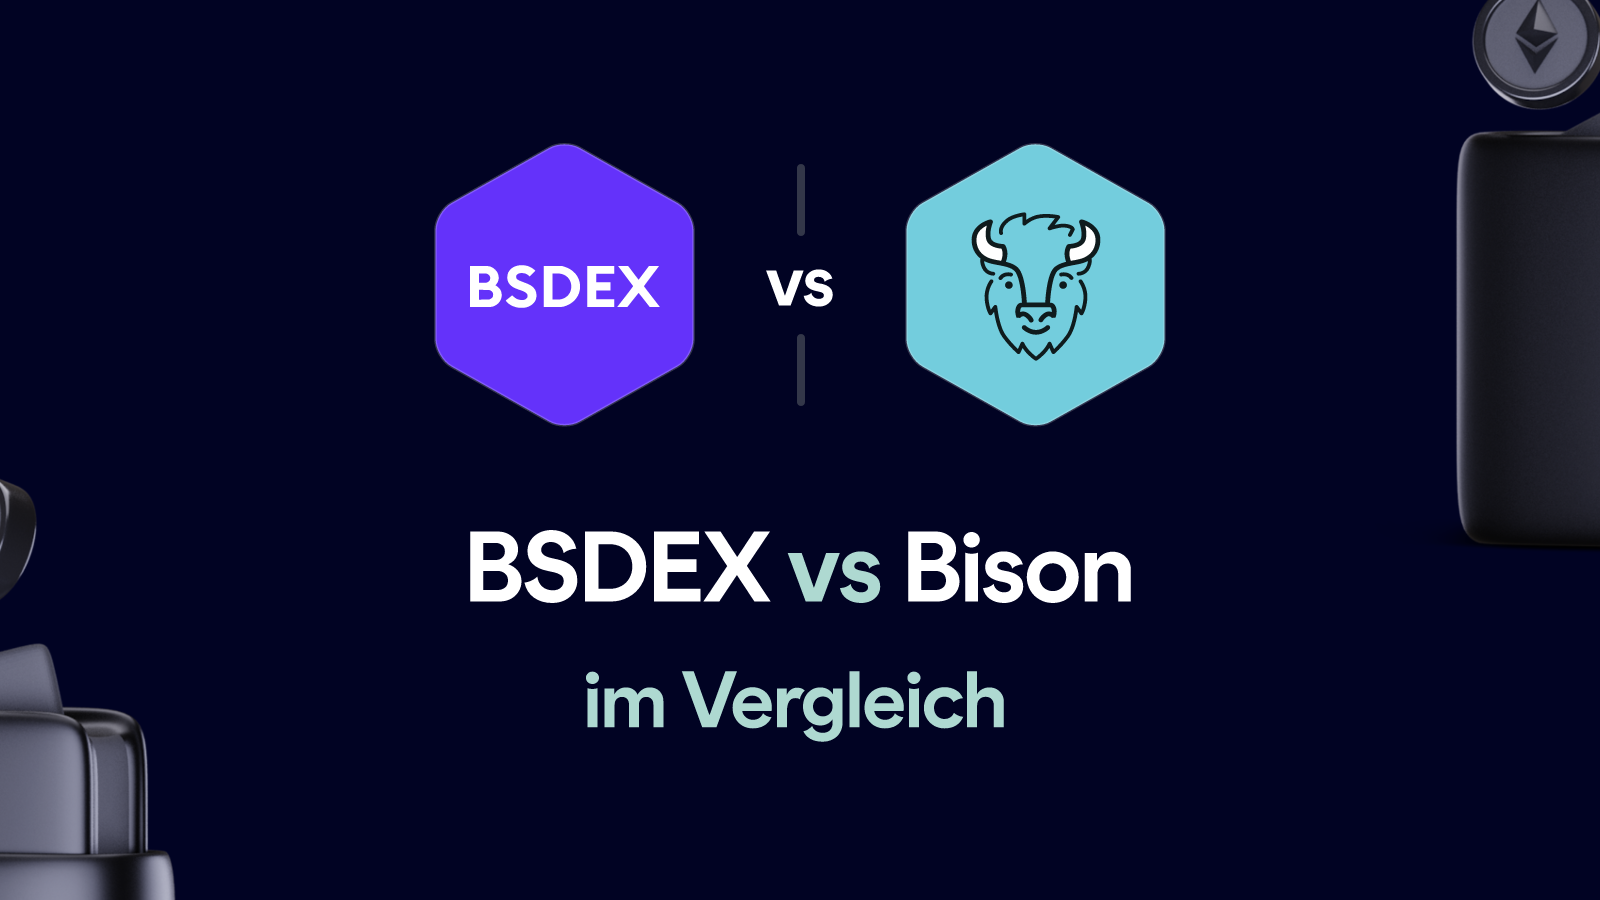 Bsdex vs Bison